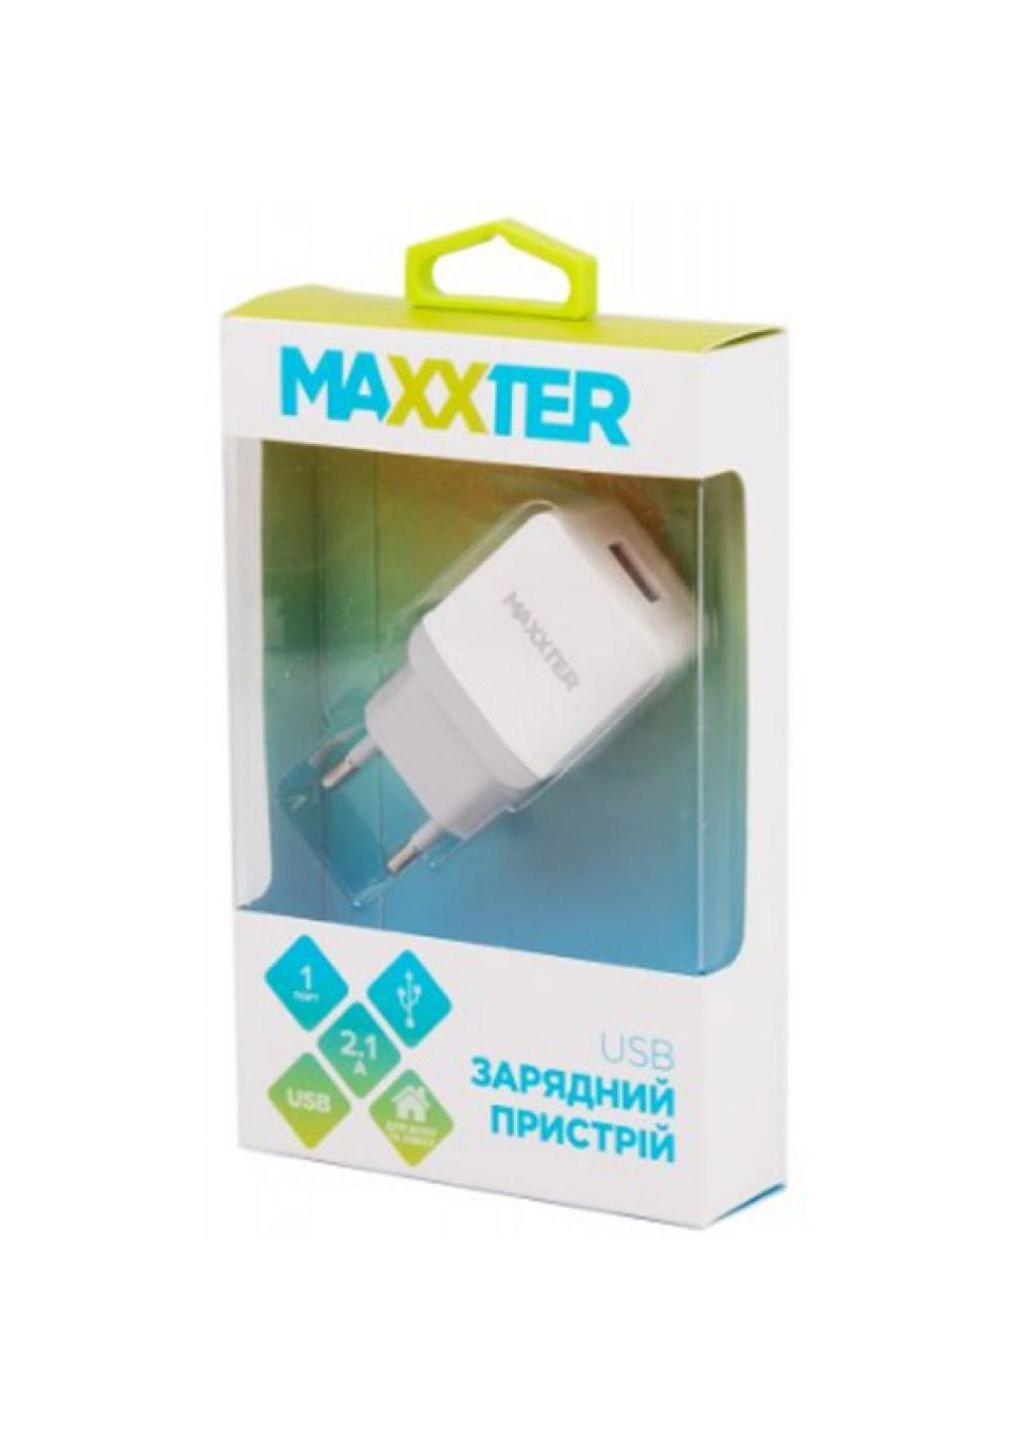 Зарядное устройство (UC-24A) Maxxter 1 usb, 5v/2.1a (253507517)